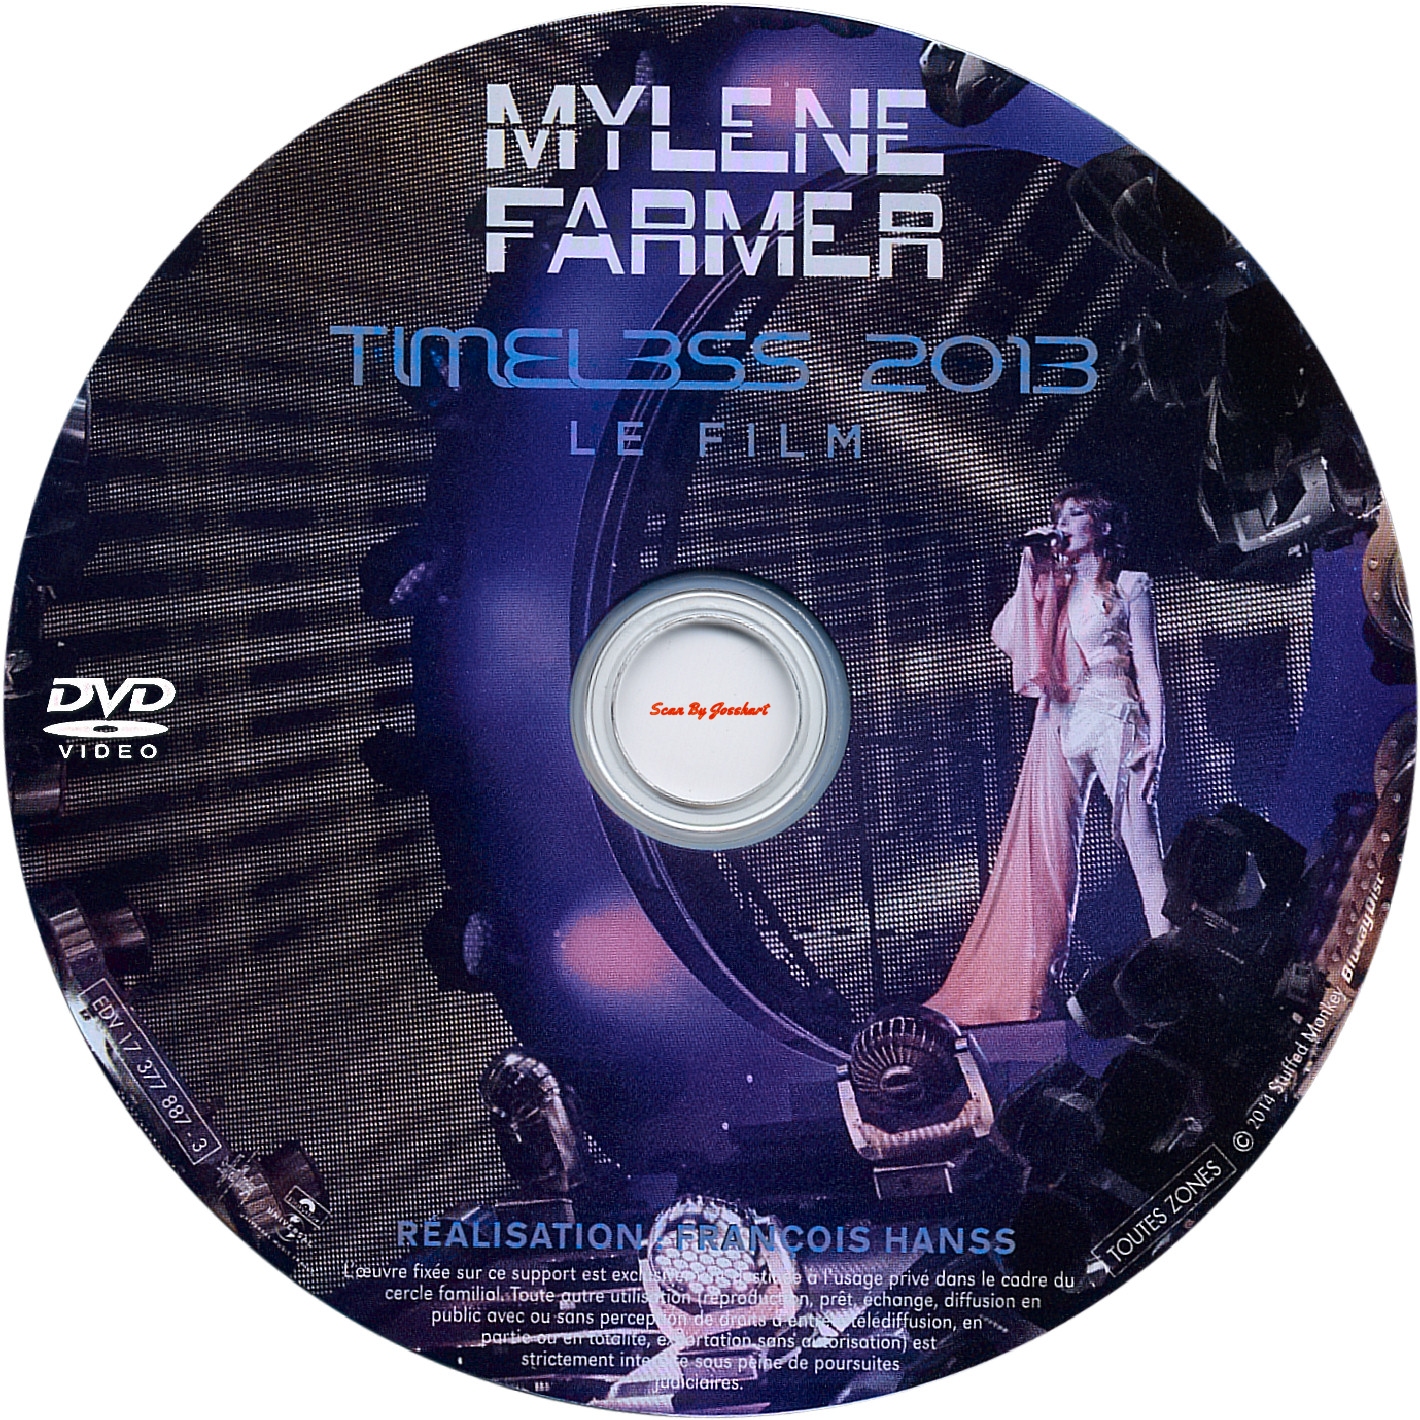 Mylne Farmer - Timeless v2